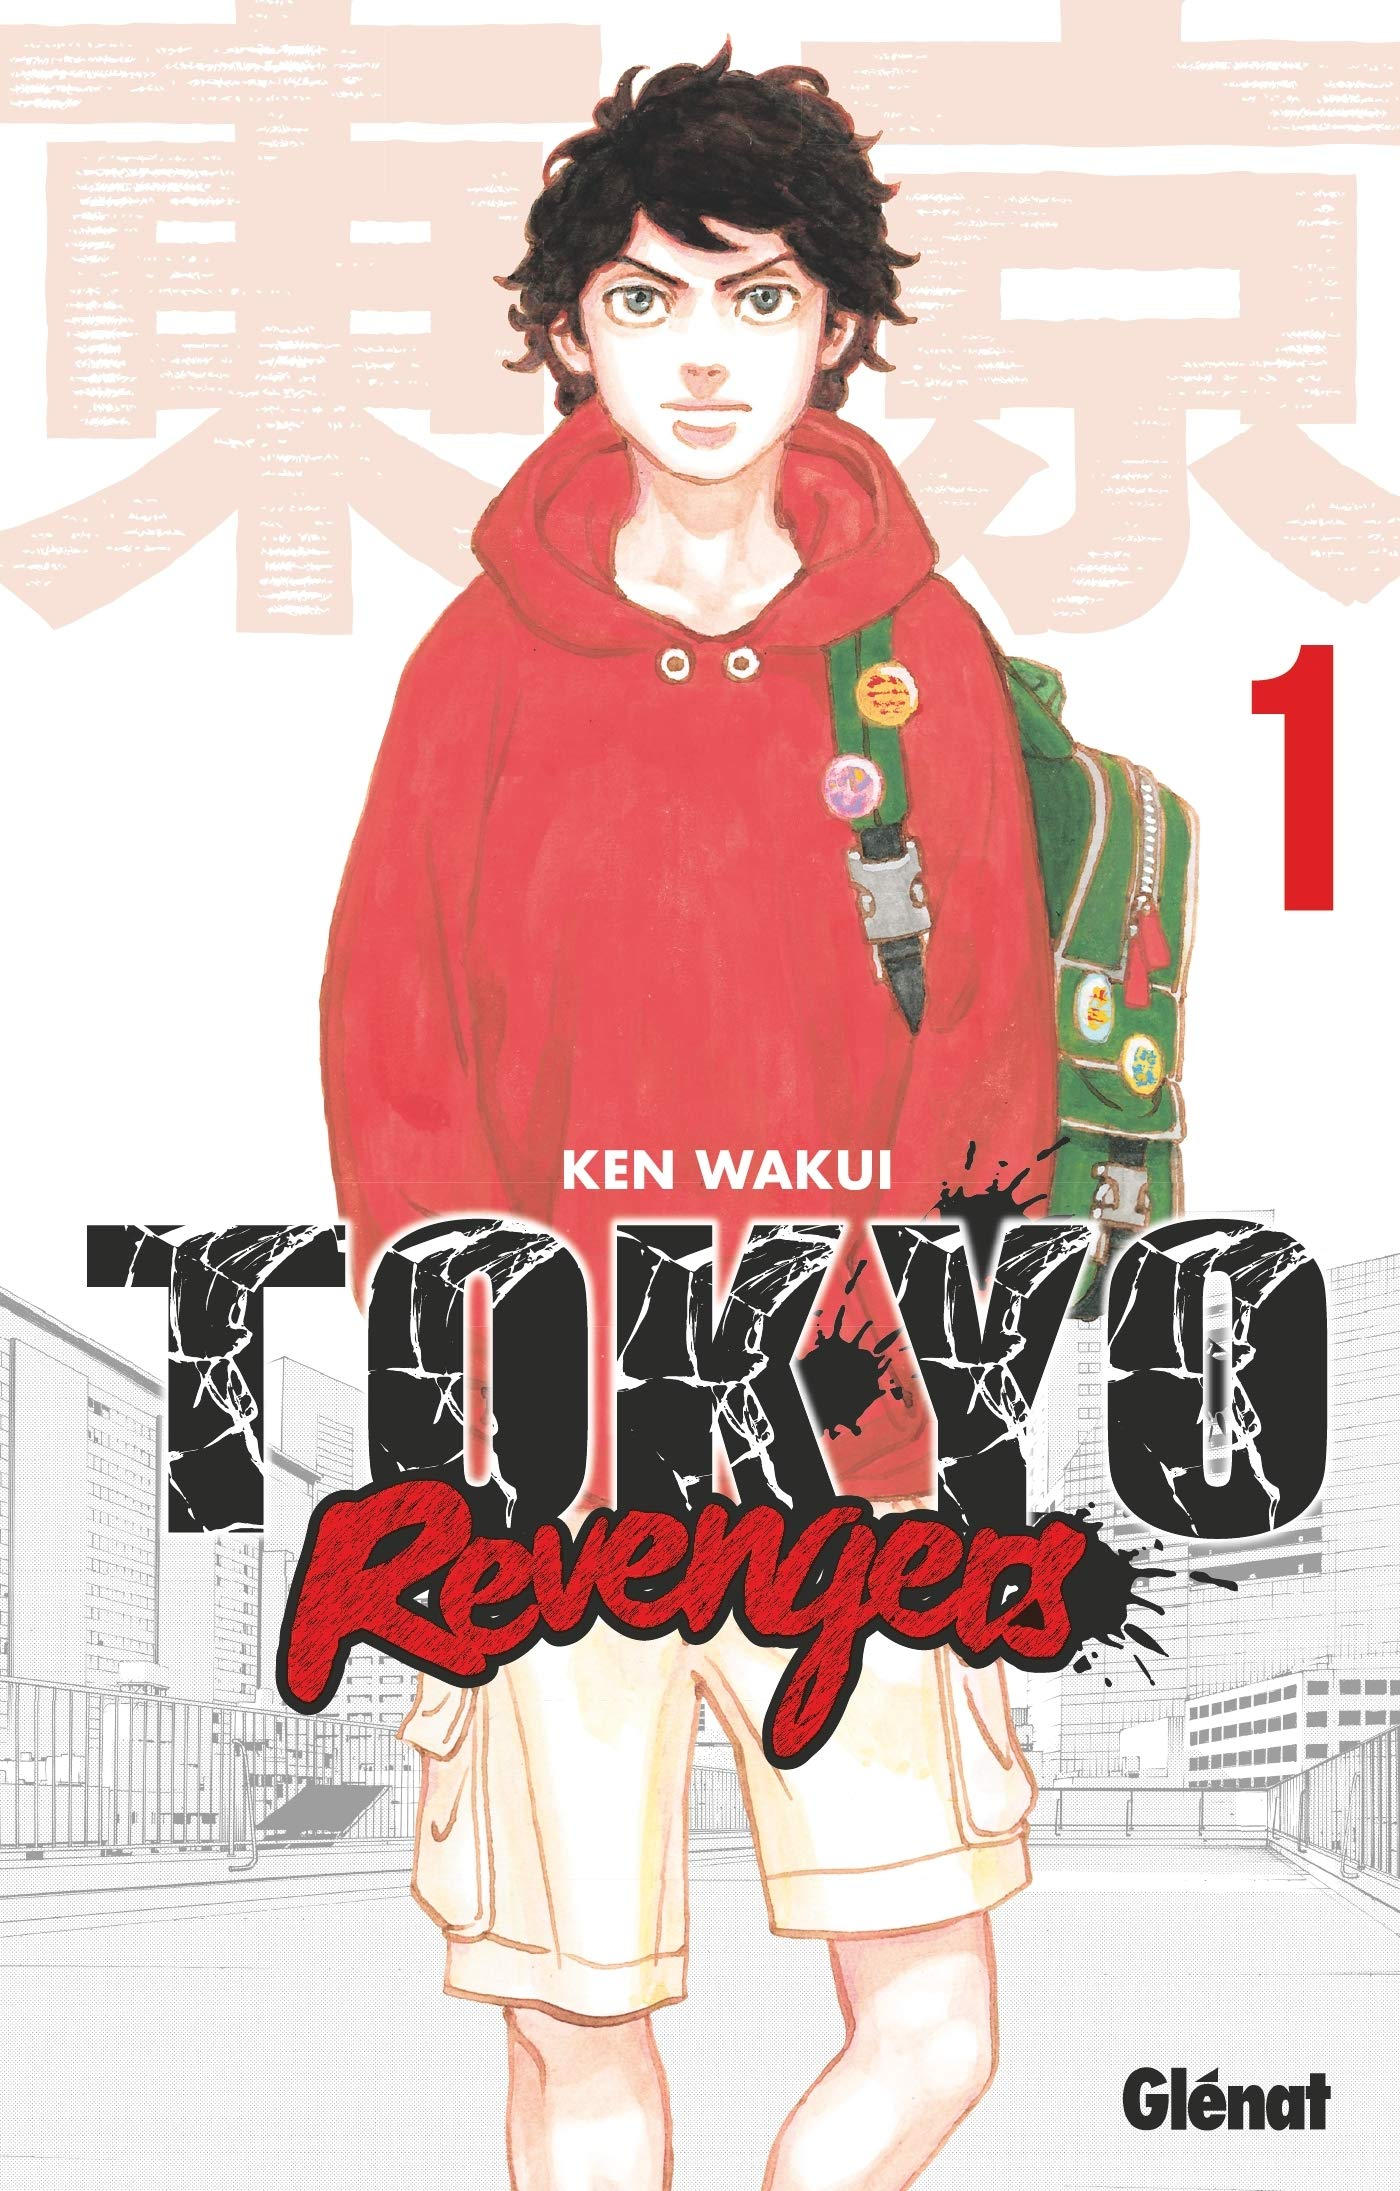 Tokyo Revengers MAL - cover of the 1st volume